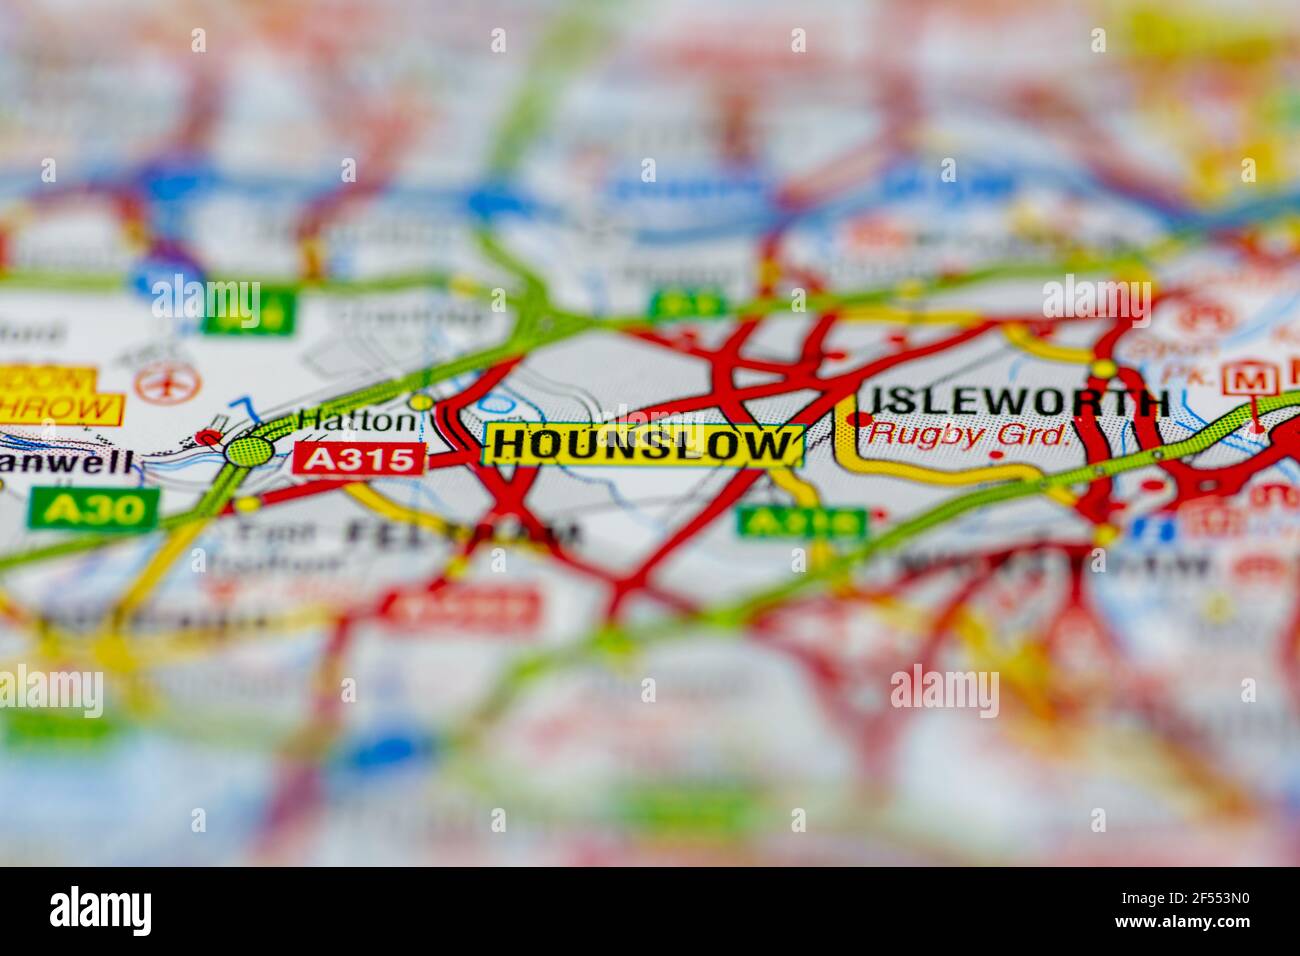 Hounslow se muestra en un mapa geográfico o mapa de carreteras Foto de stock